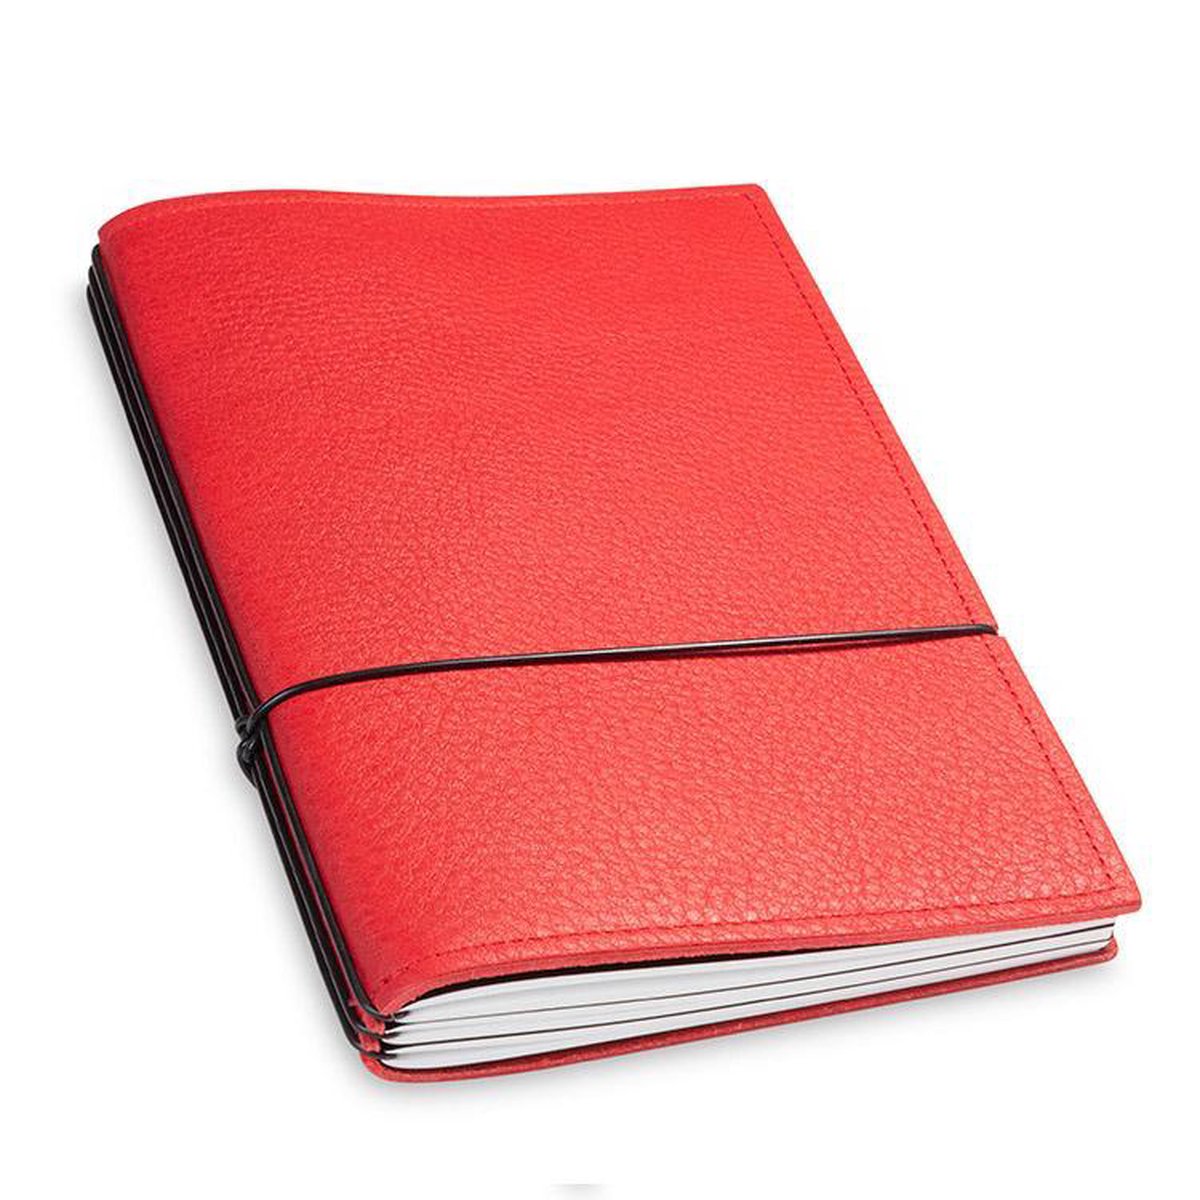 X17 Notebook A5 Leder Natur Rood - 3 katernen